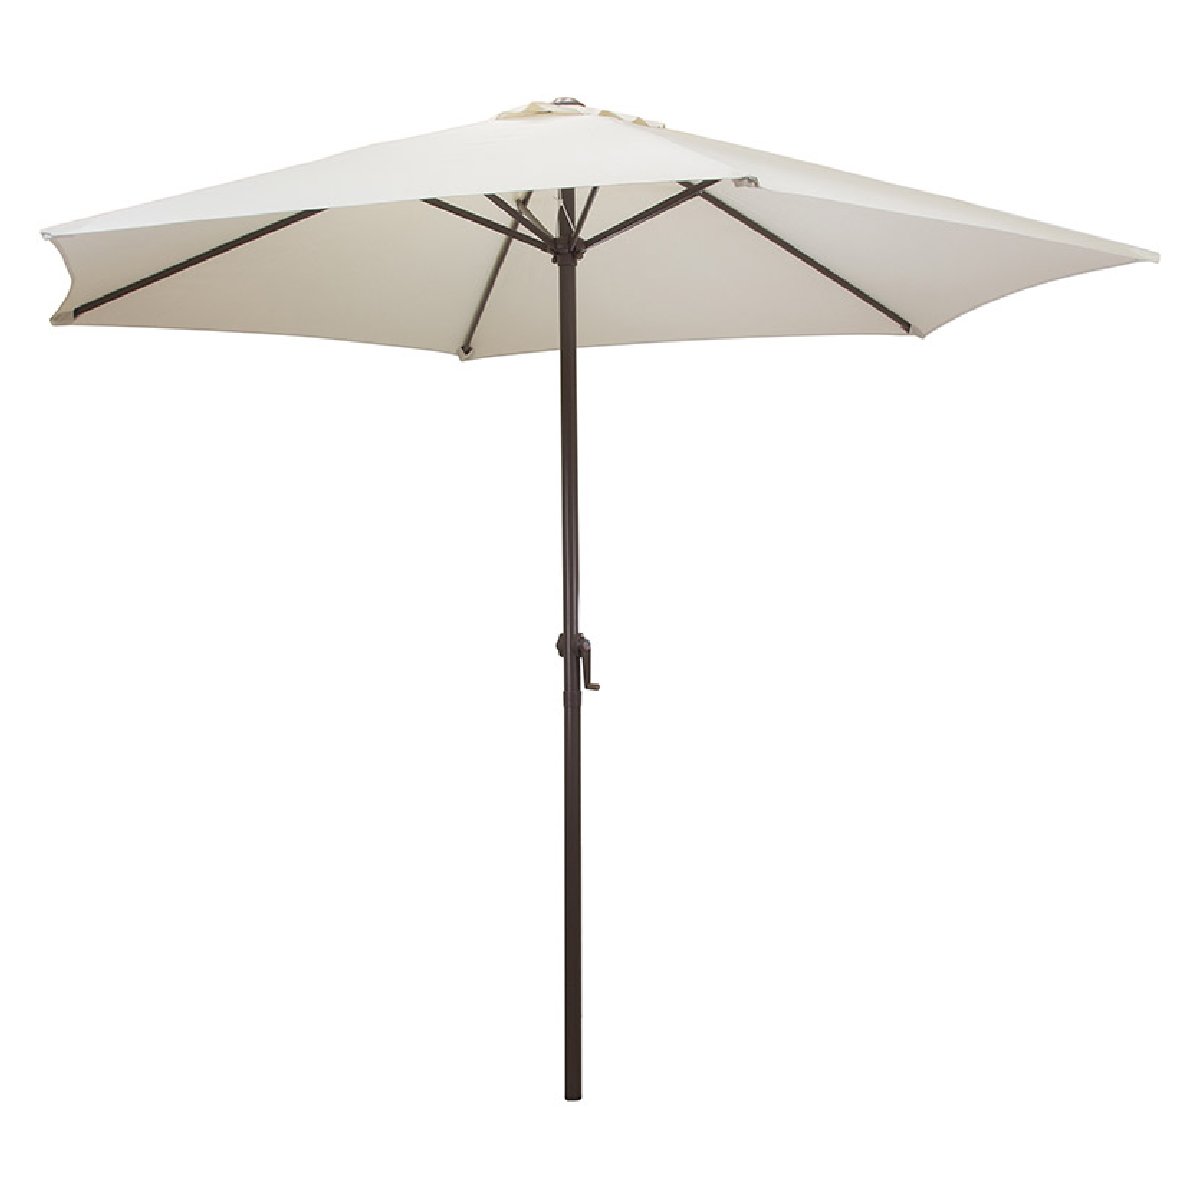 Зонт садовый GU-01 (бежевый) без крестообразного основания (093009)Купить